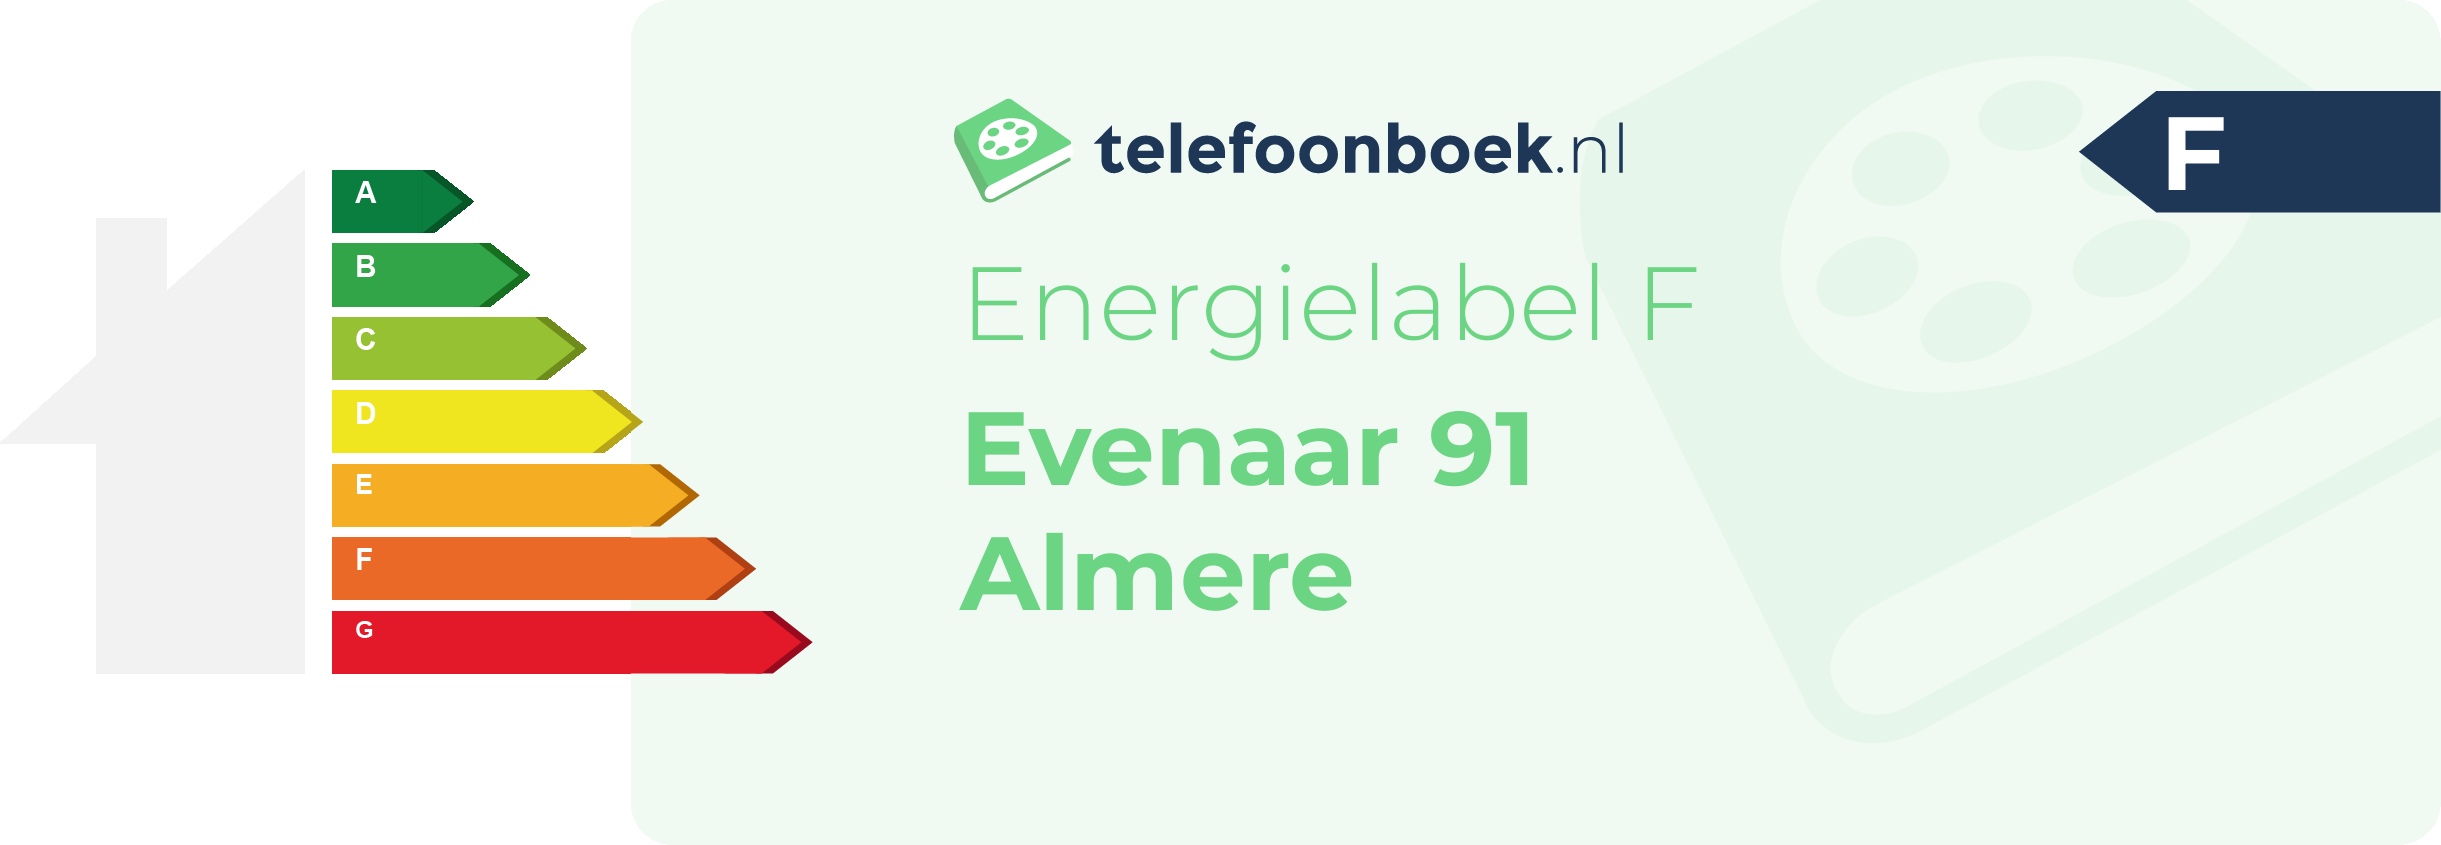 Energielabel Evenaar 91 Almere